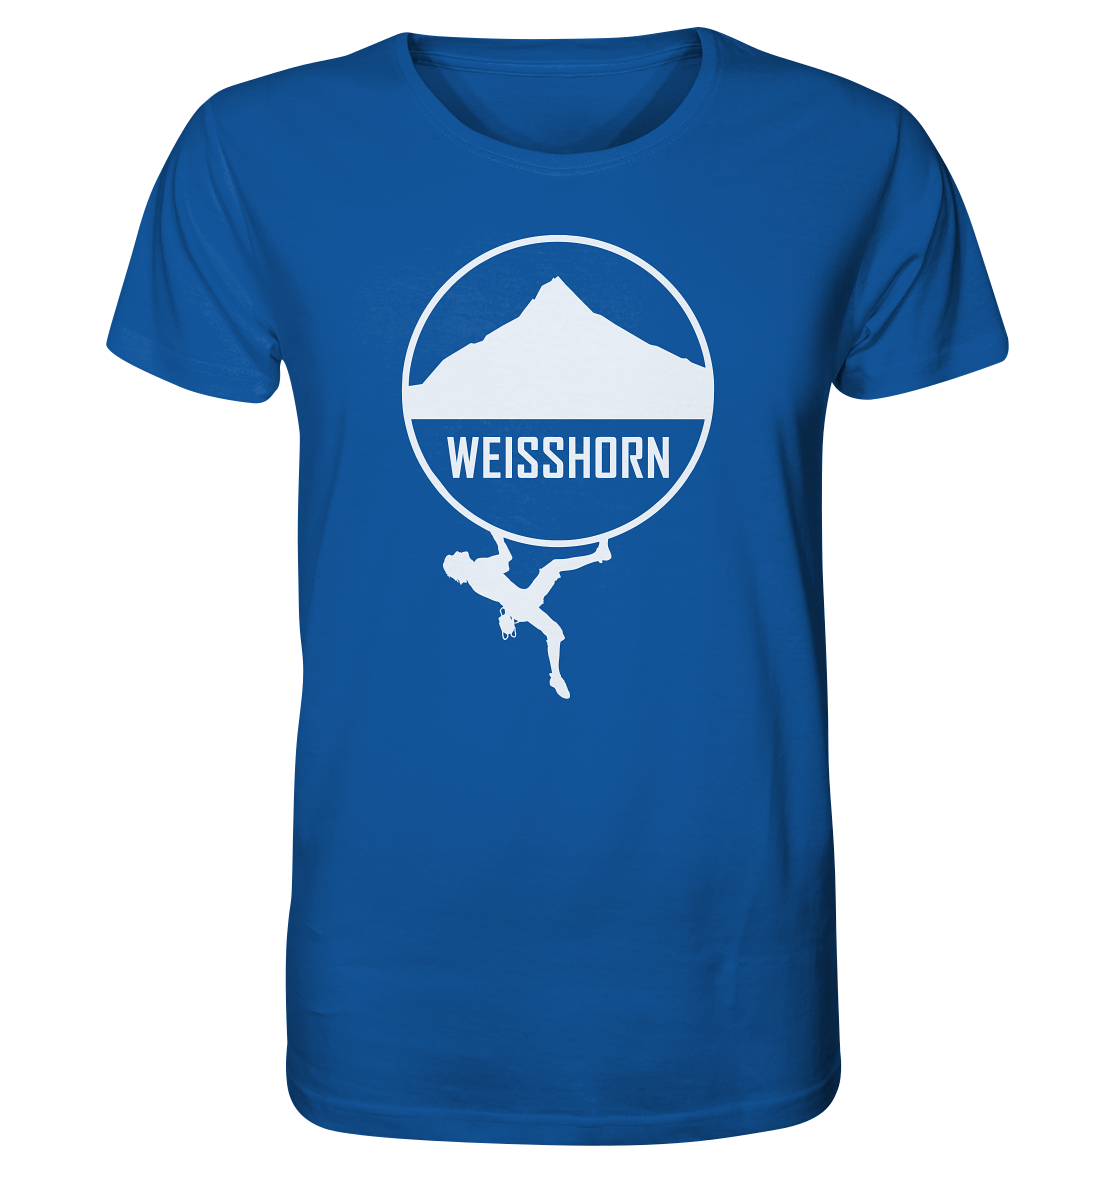 Weisshorn Climber - Organic Basic Shirt